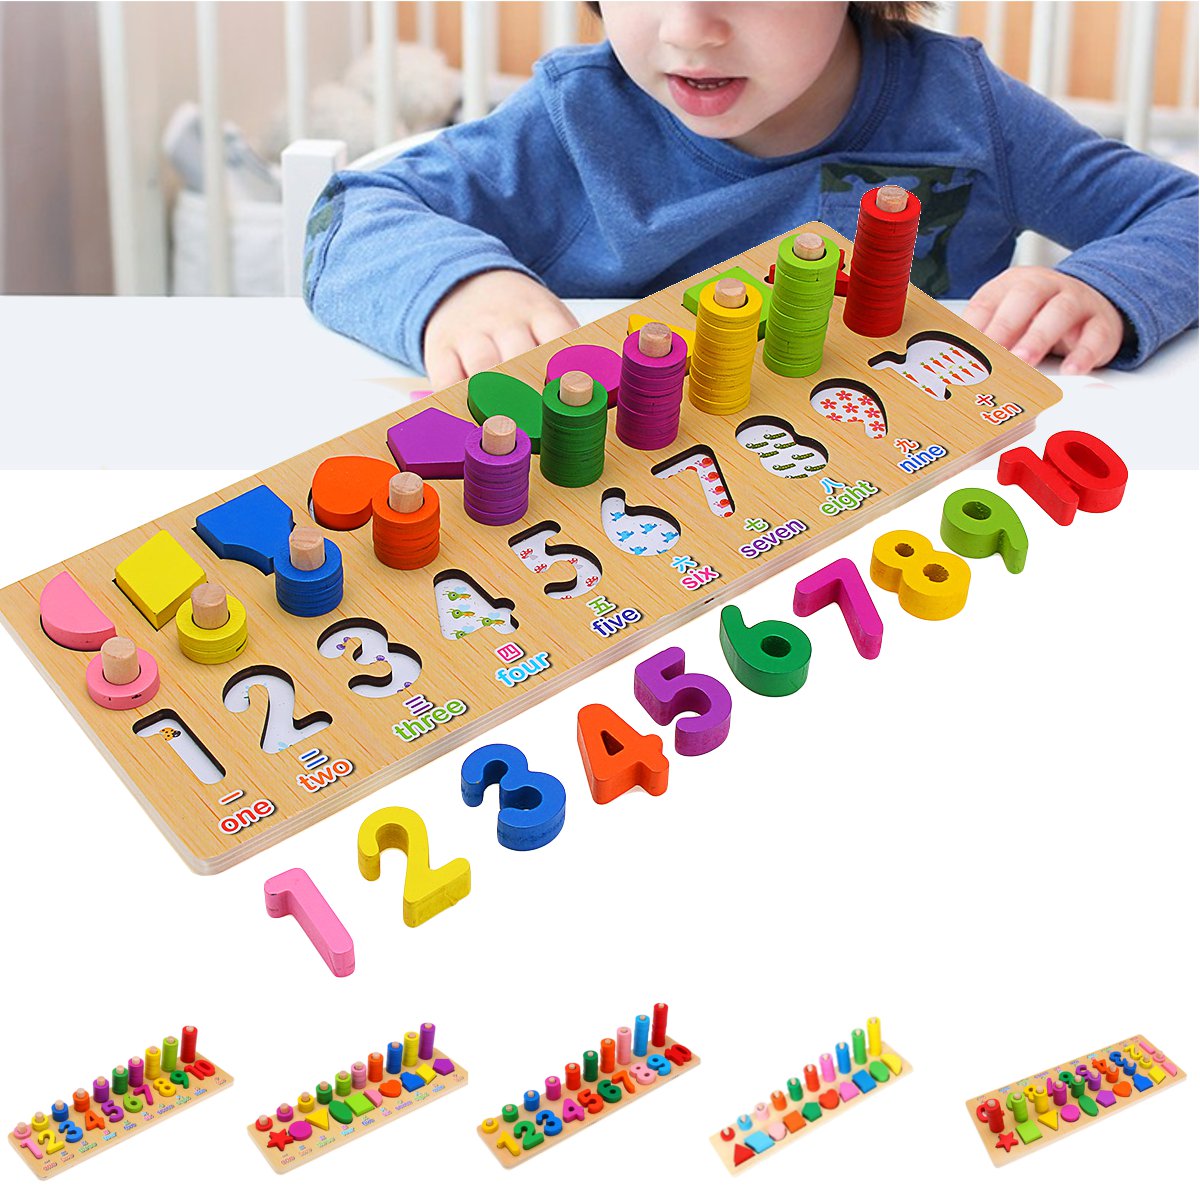 Jeu de formation geometrique de nombres de puzzle denfants dage prescolaire de jouets en bois educatifs